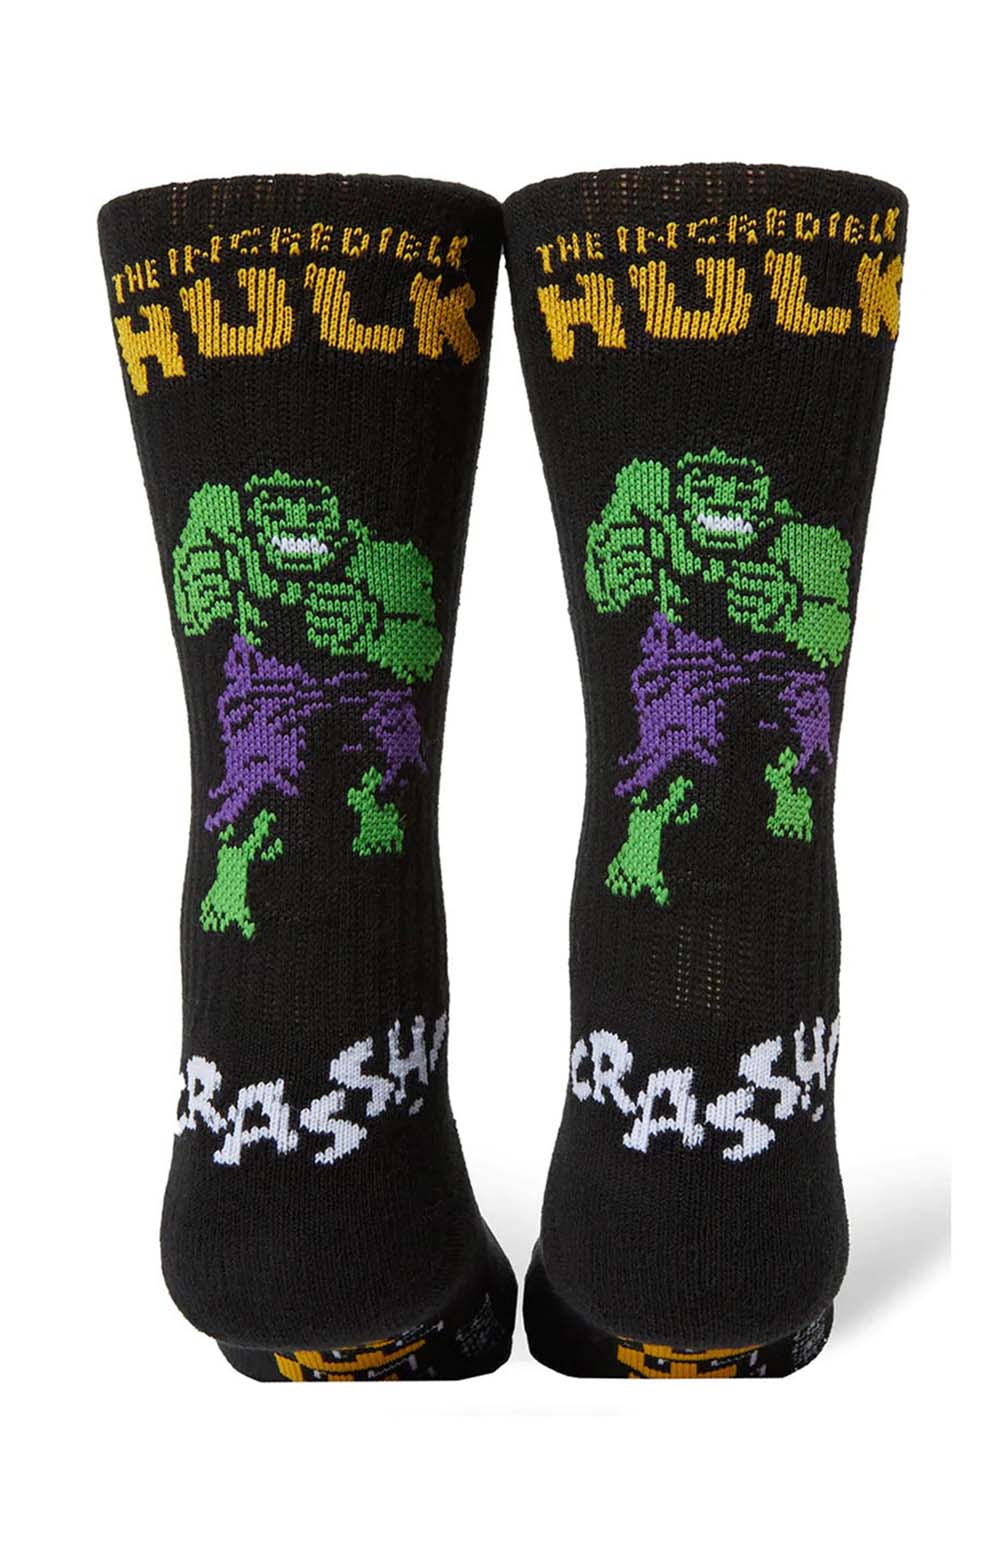 x Marvel Hulk Retro Crew Socks